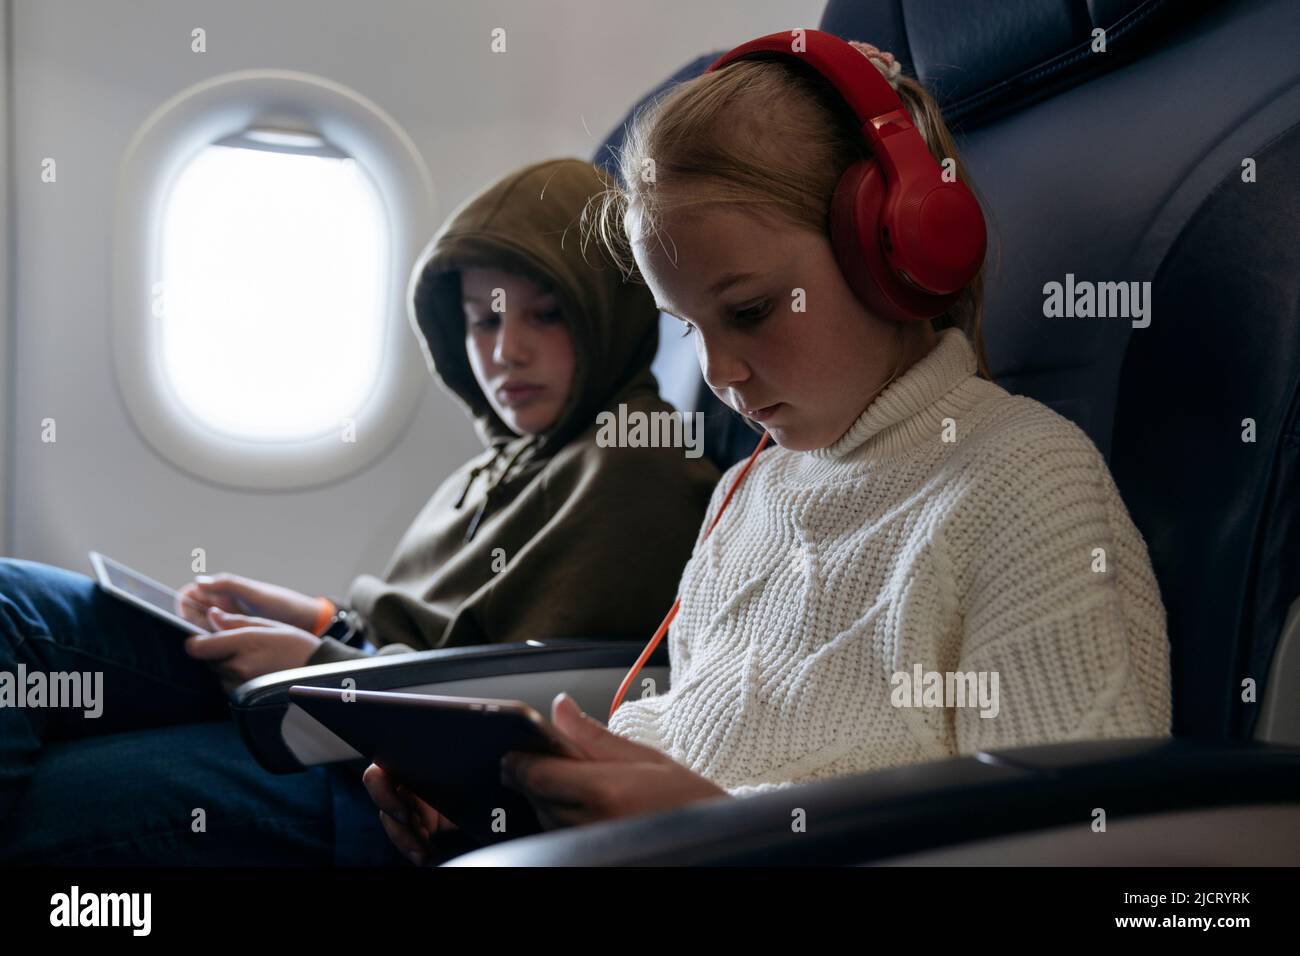 Les enfants volent dans un avion et regardent une tablette. Banque D'Images